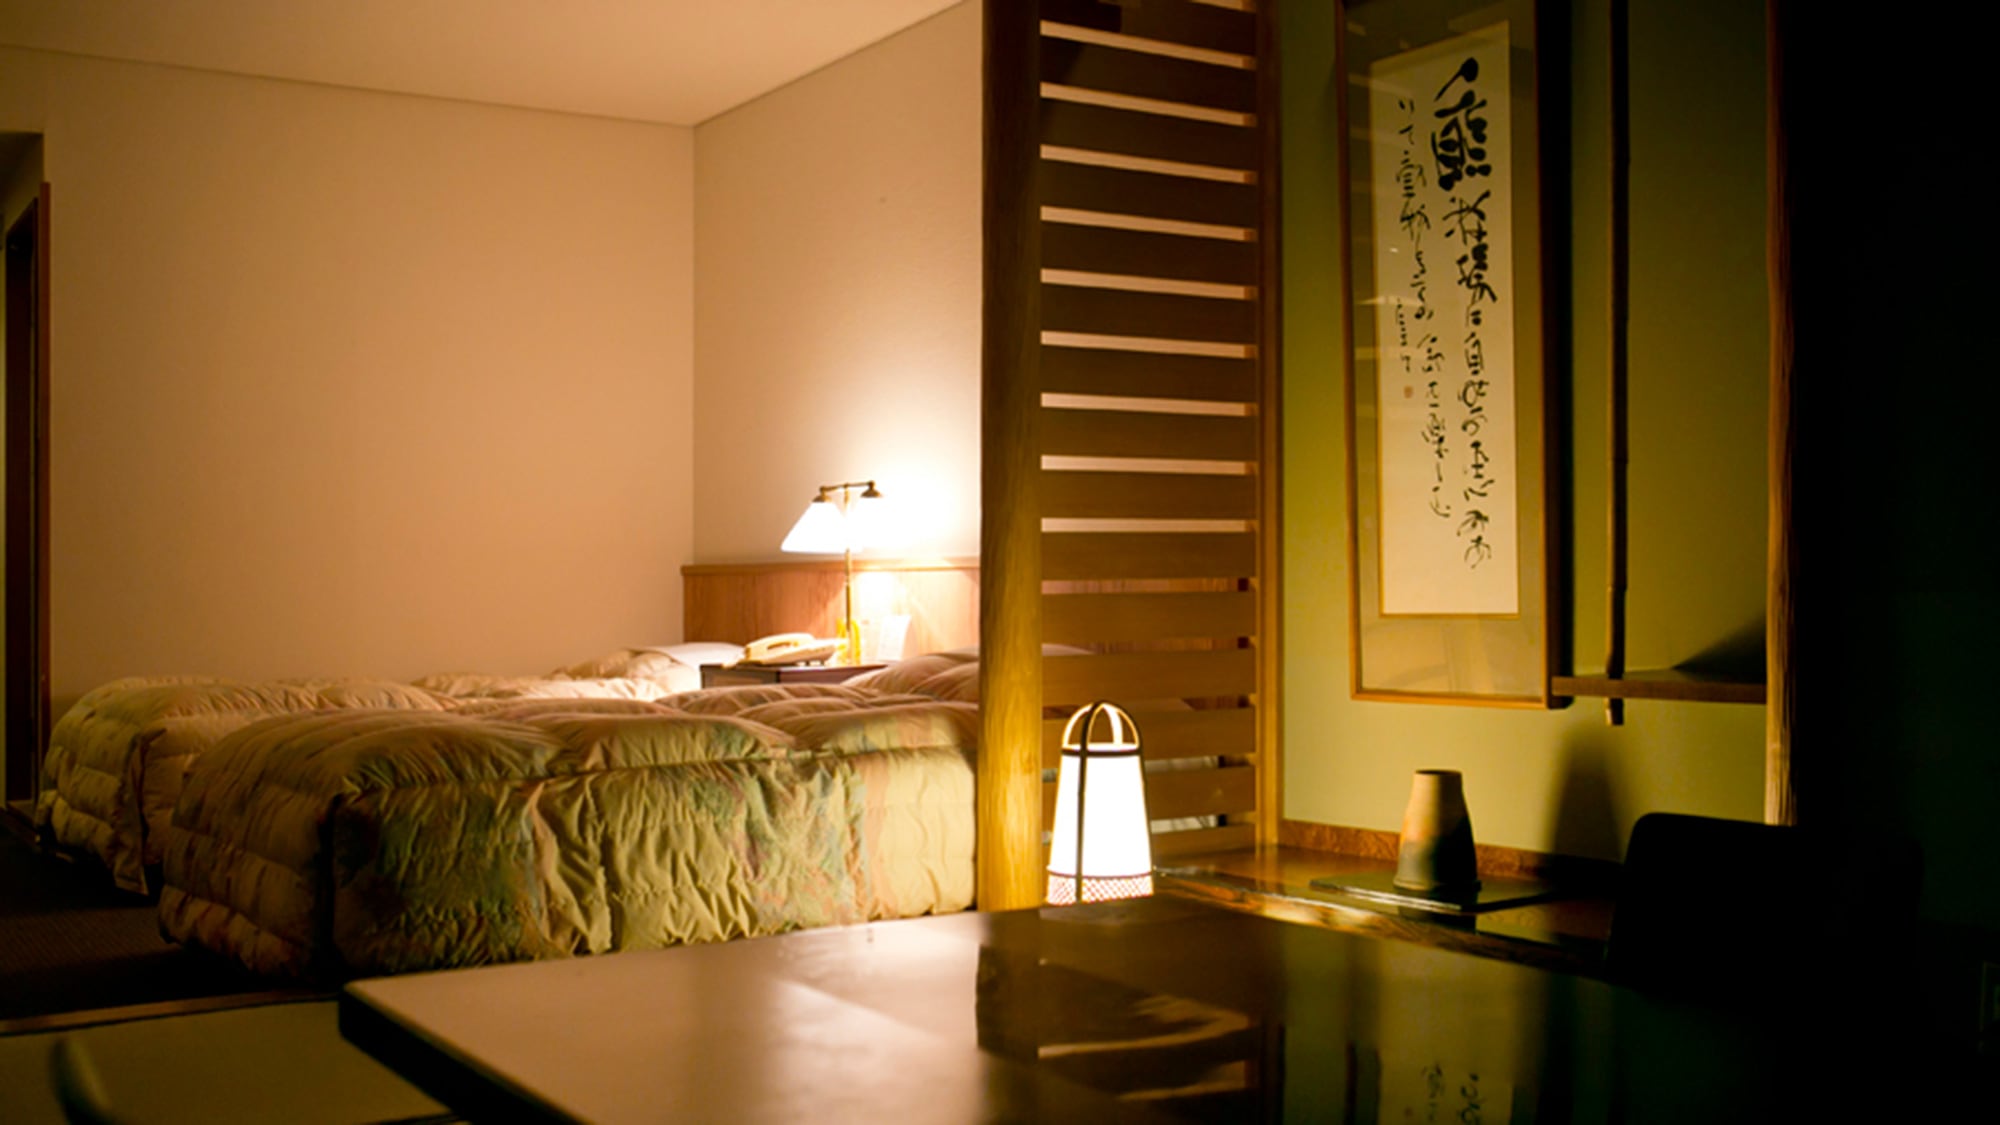 ห้องญี่ปุ่นและตะวันตกตอนกลางคืน